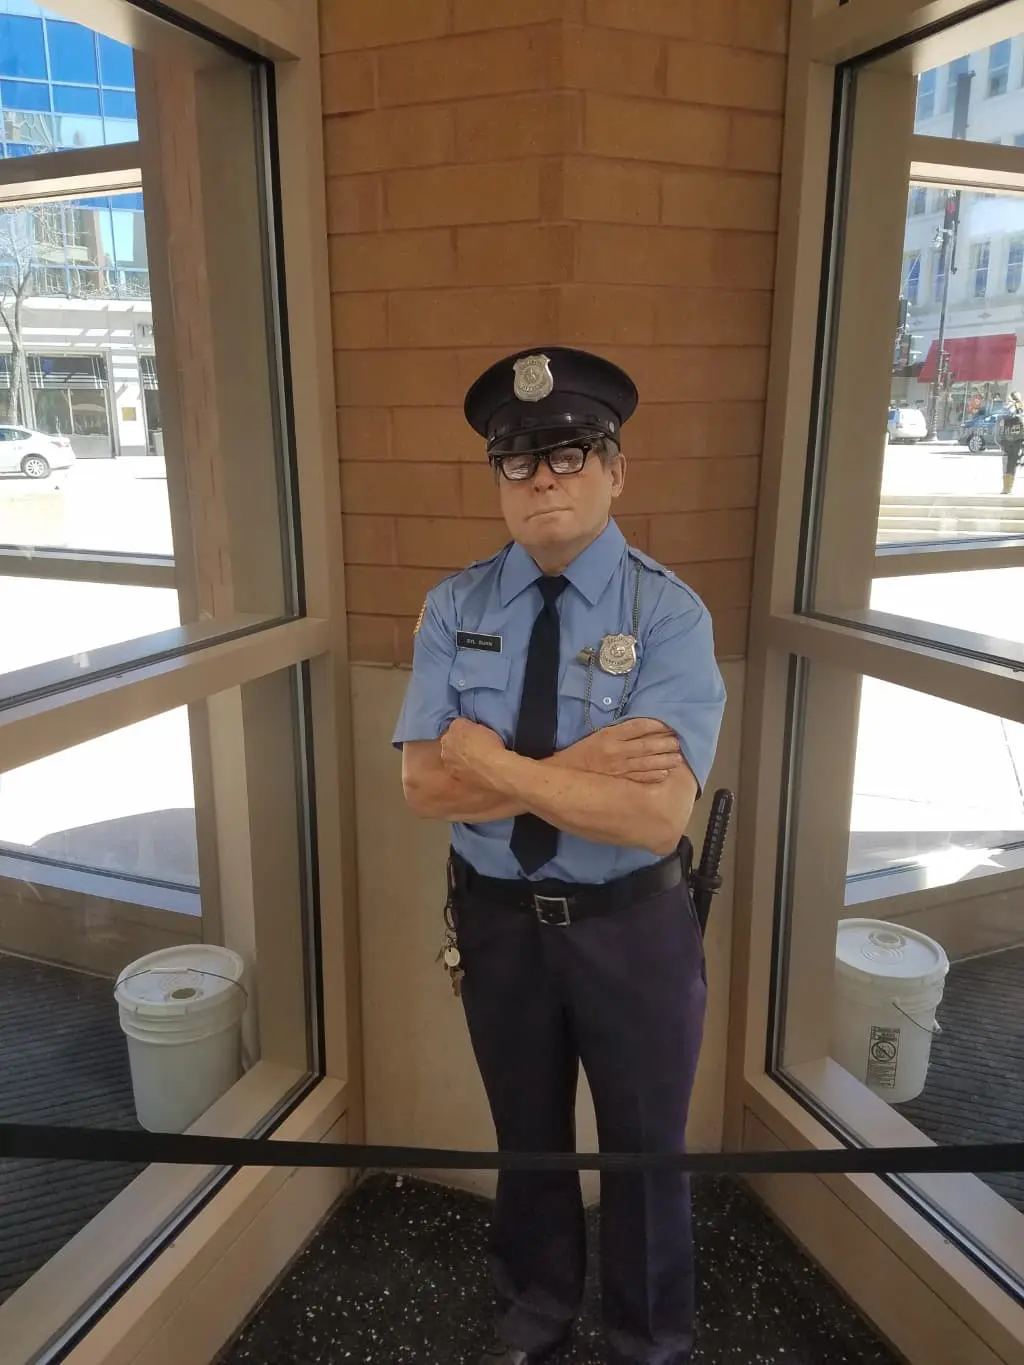 Police Sculpture